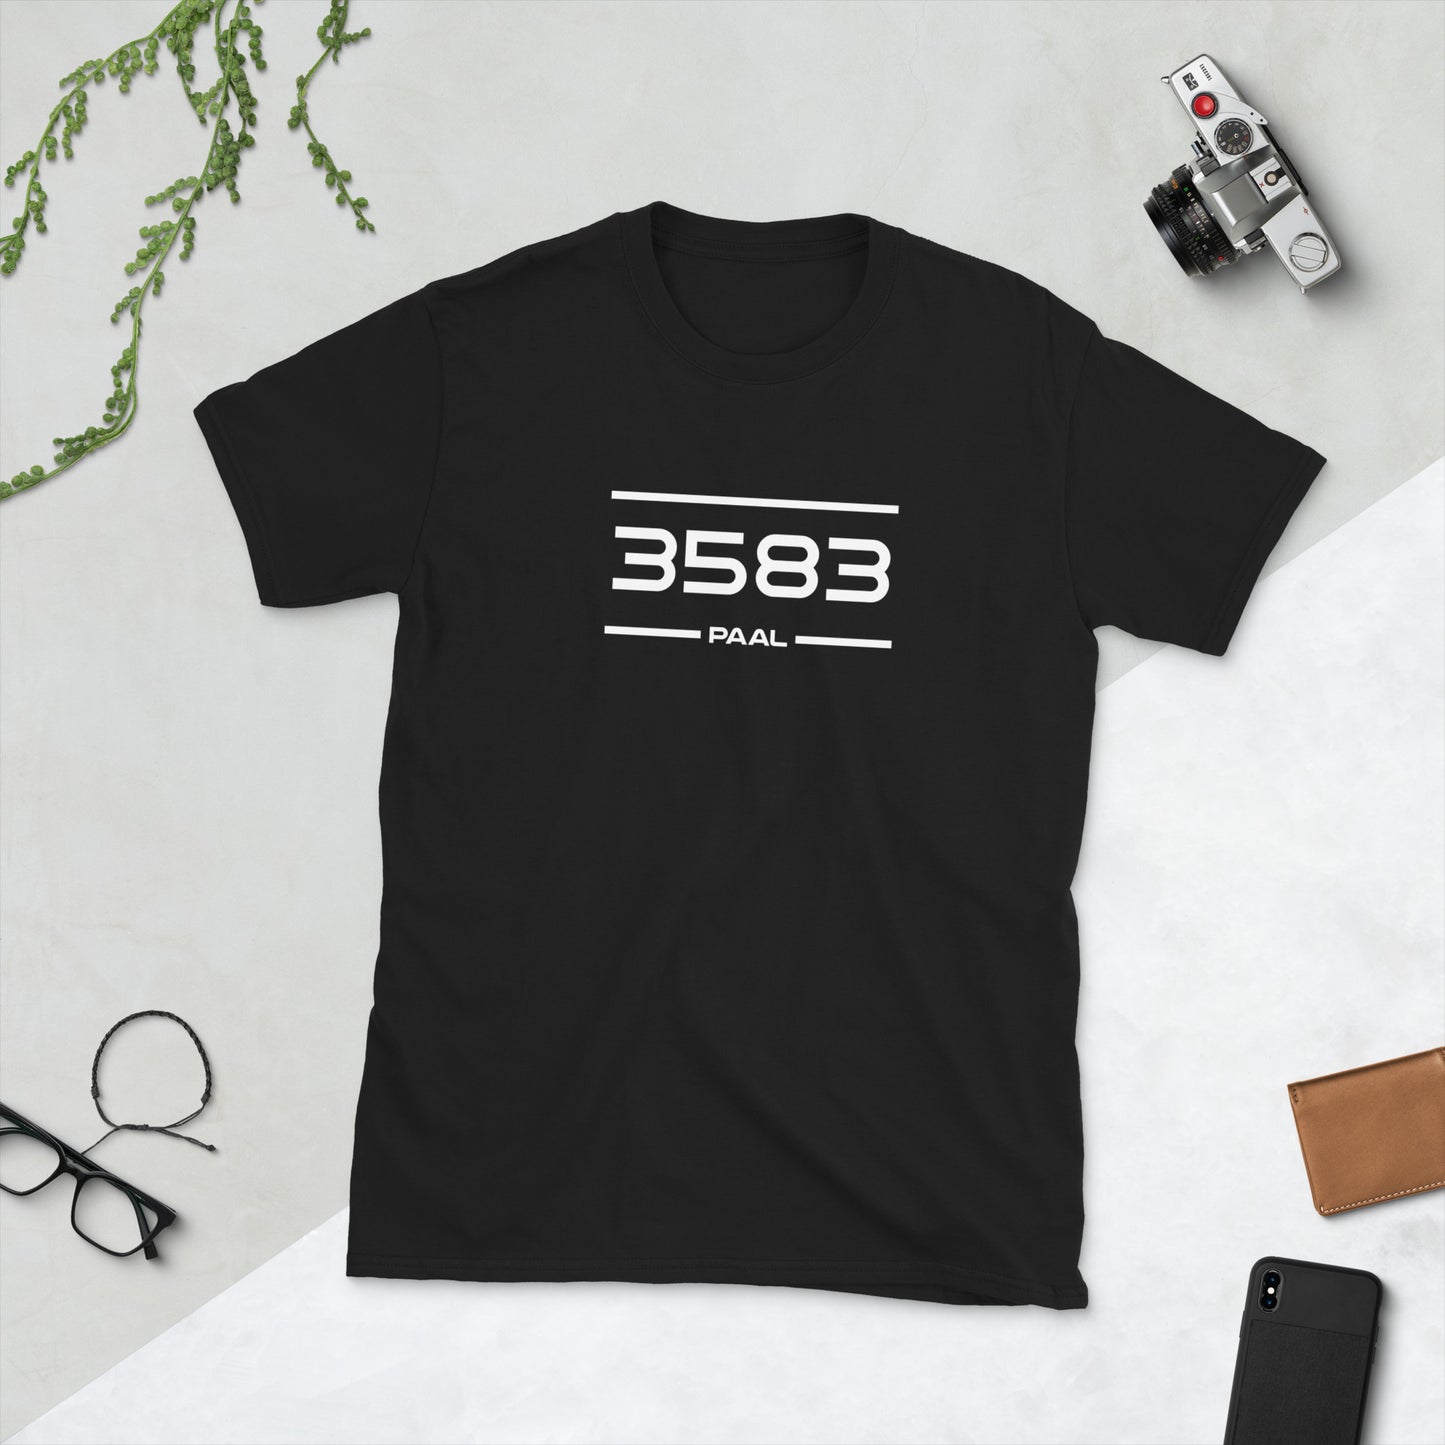 Tshirt - 3583 - Paal